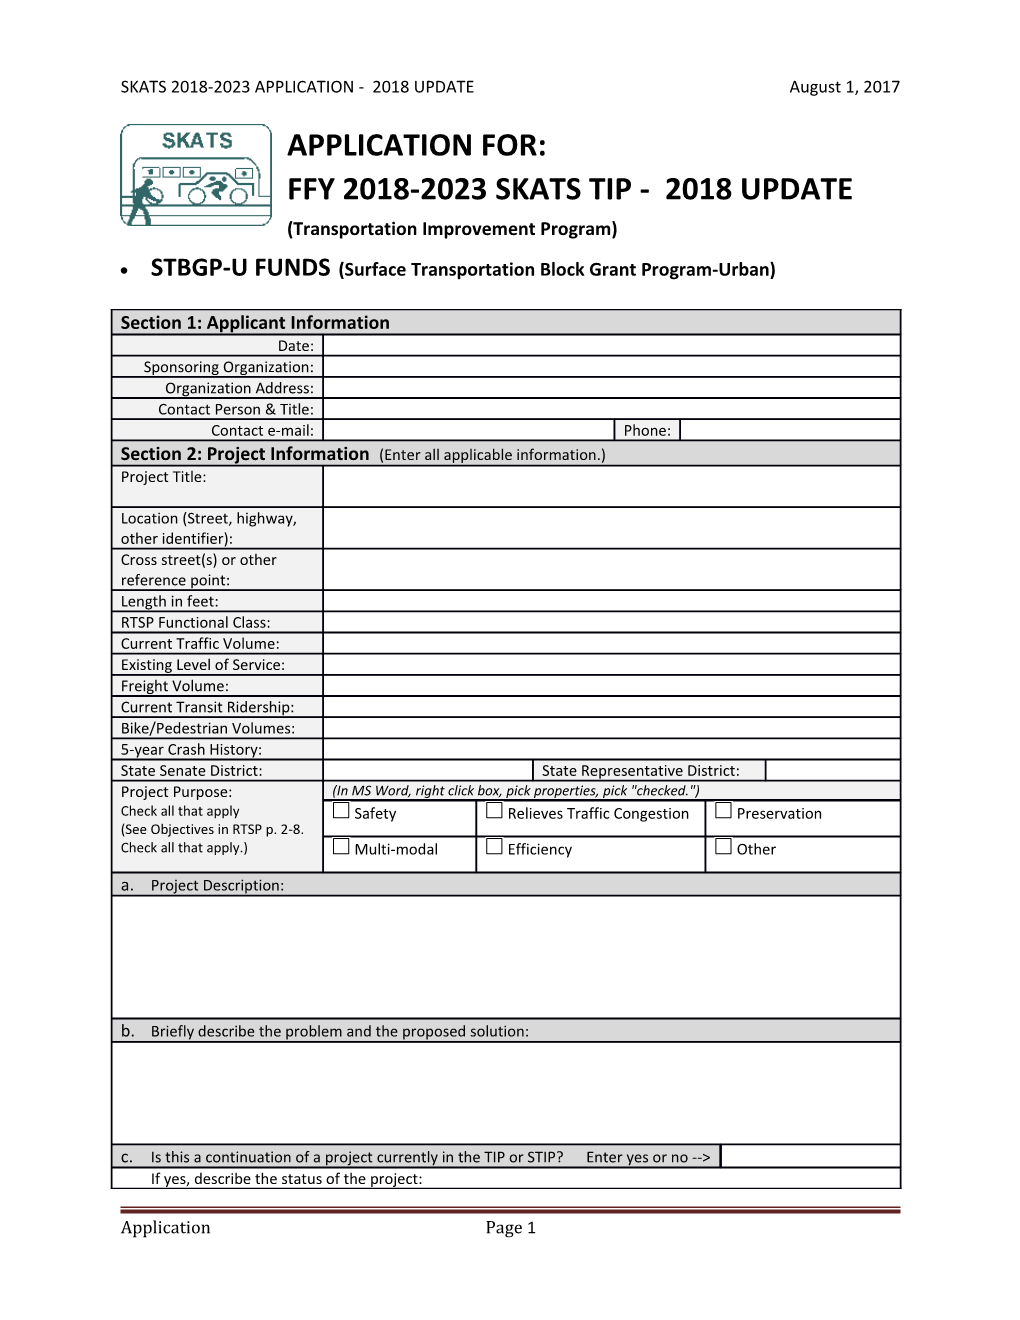 SKATS 2018-2023 APPLICATION - 2018 UPDATE August 1, 2017